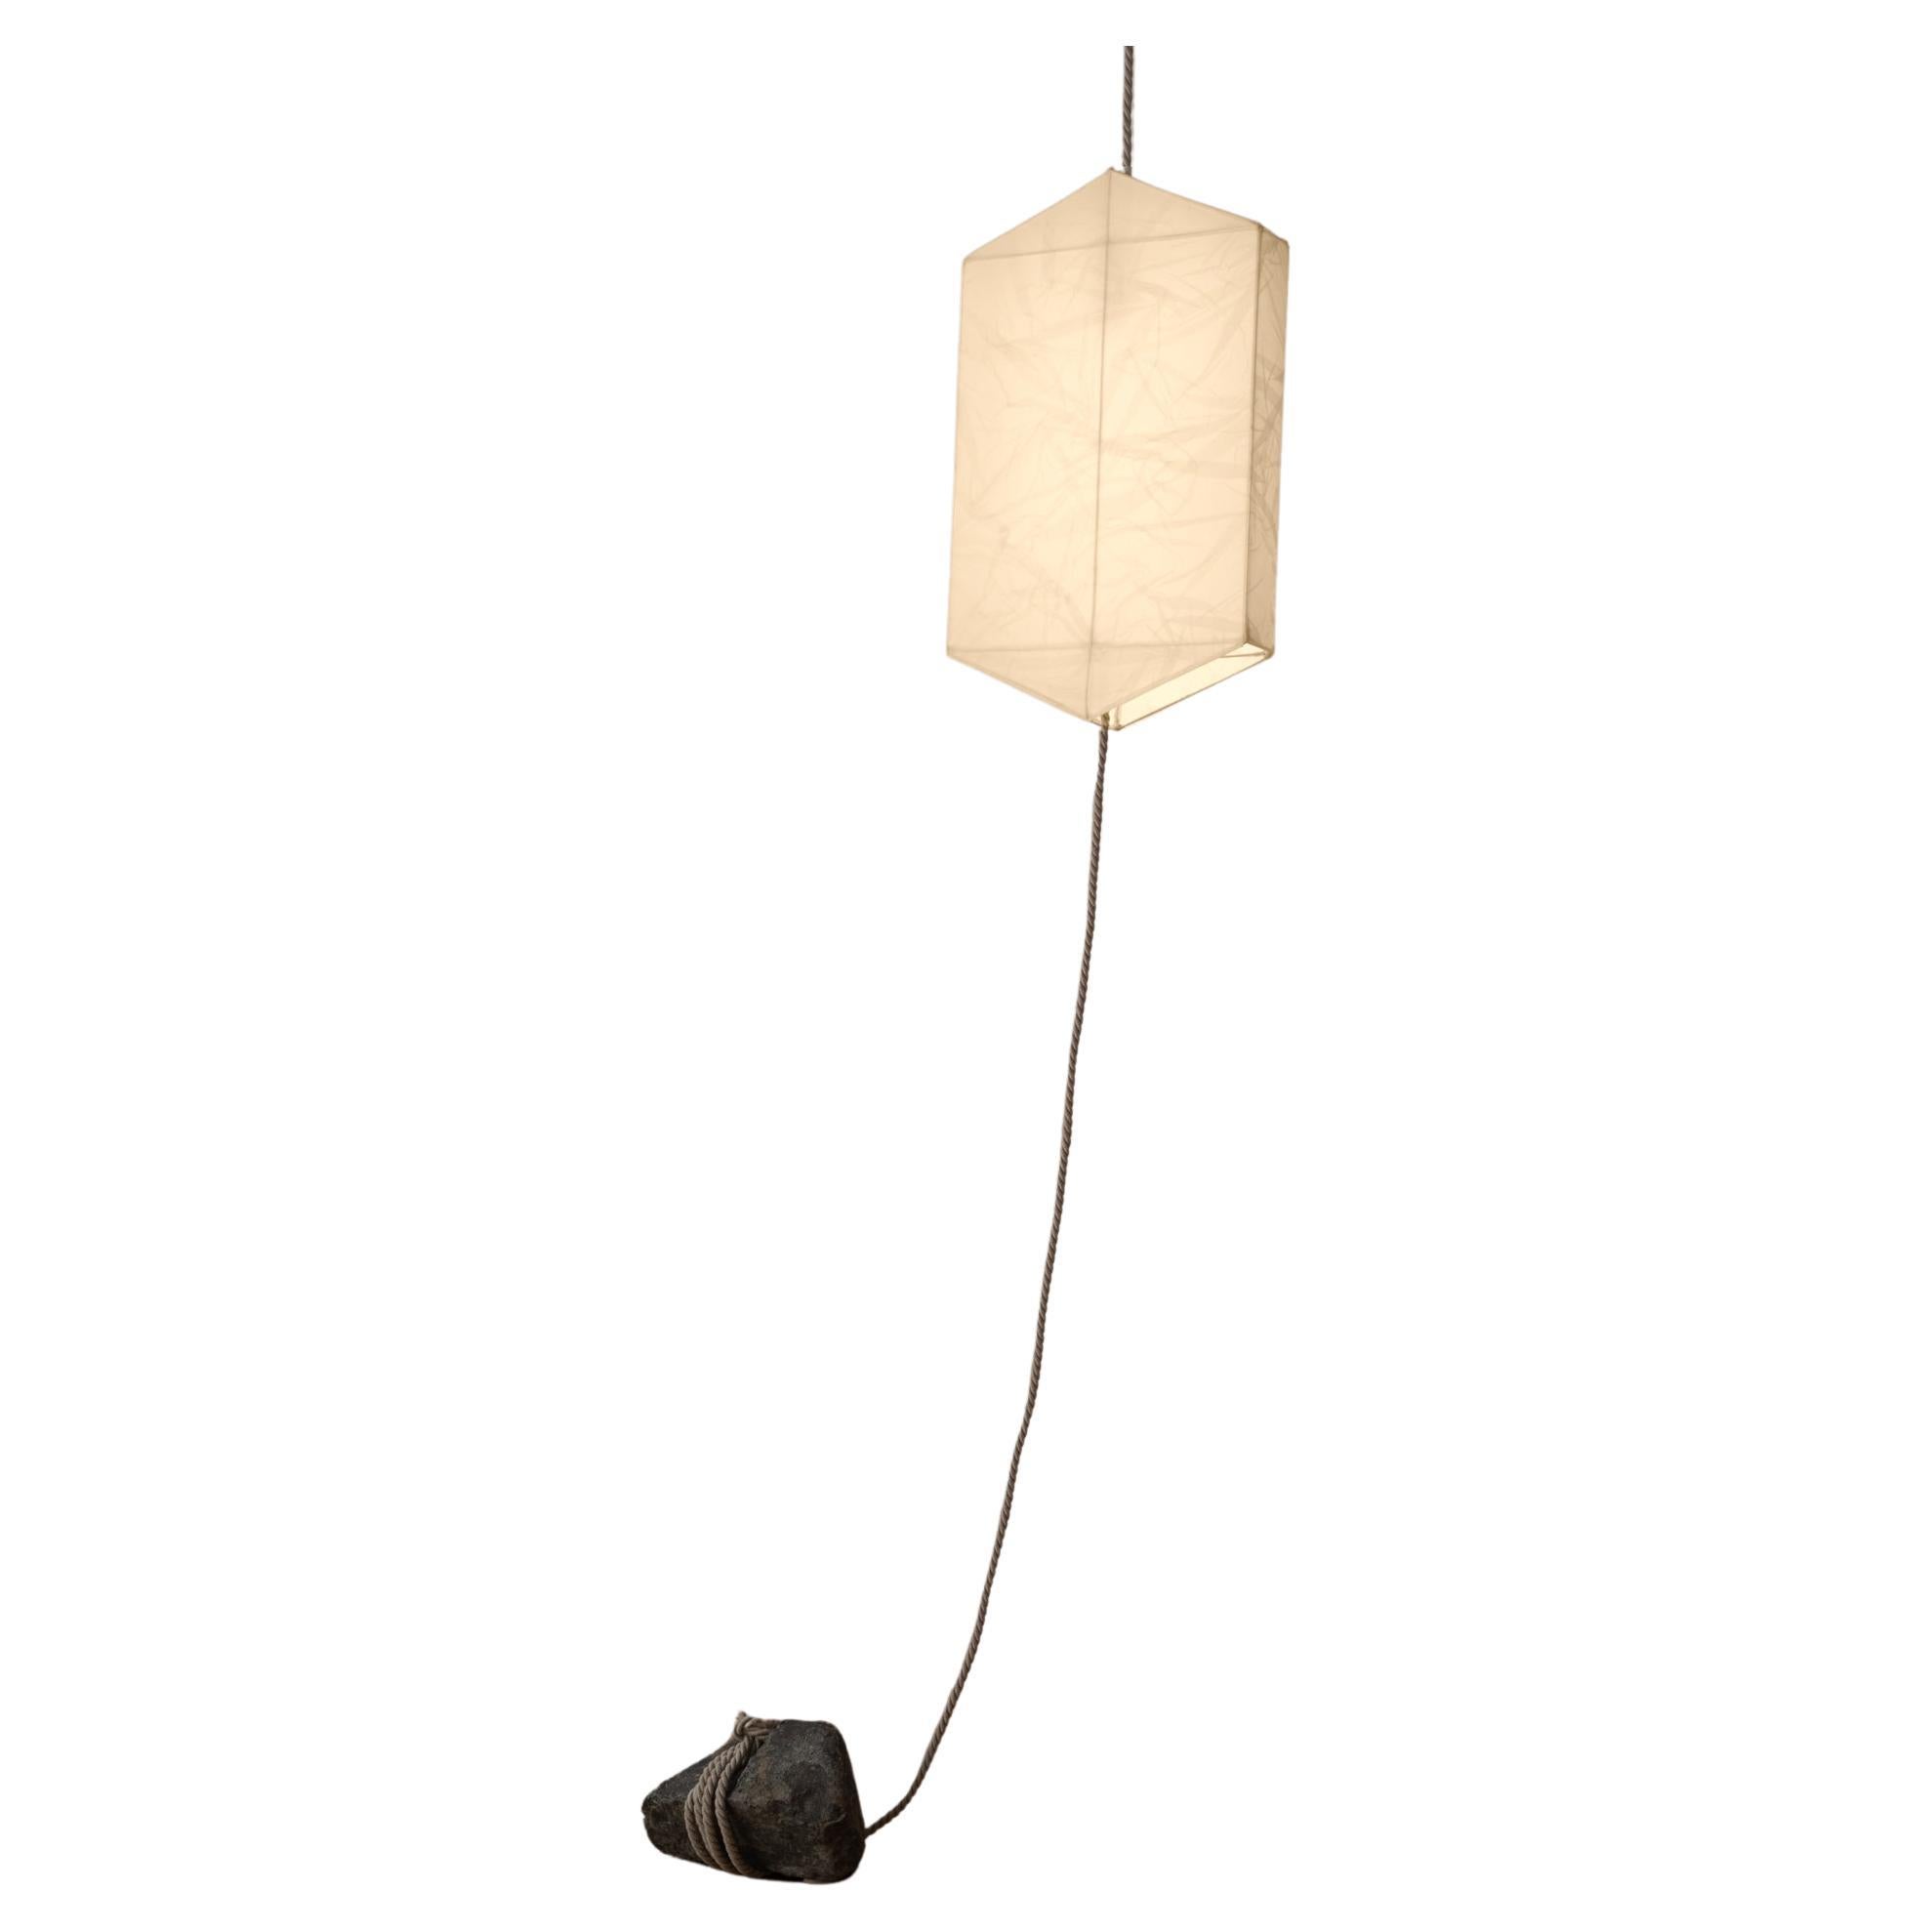 Lampe suspendue de style lanterne unique en son genre, composée d'organza de soie, de corde et de pierres brutes en vente